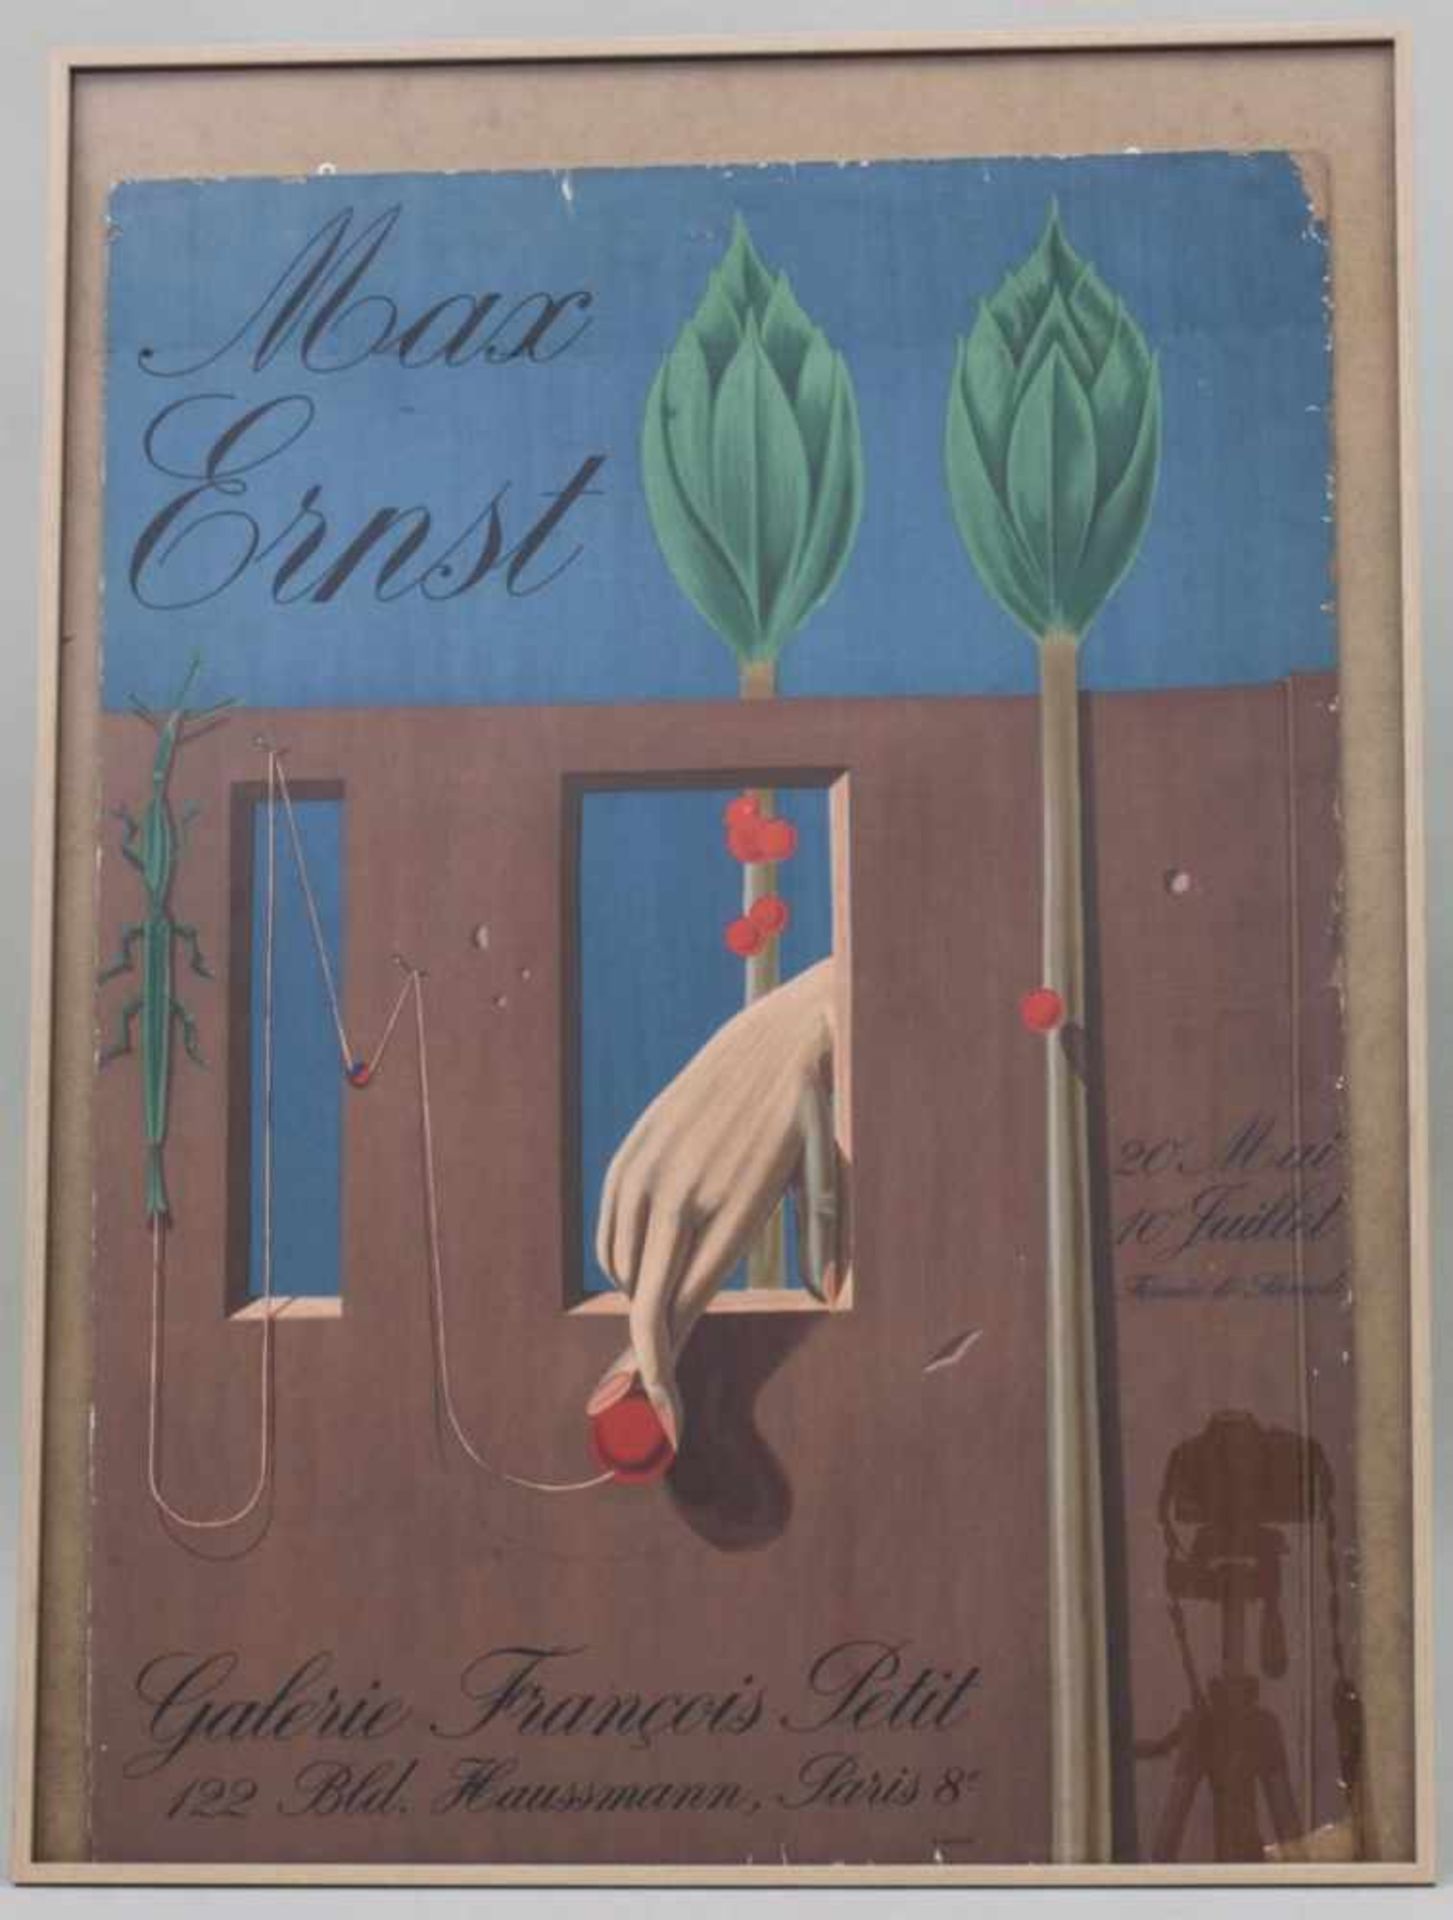 Ausstellungs-Plakat Max Ernst / Exhibition Poster Max Ernst, Paris, 1969Technik: Druck/Papier auf